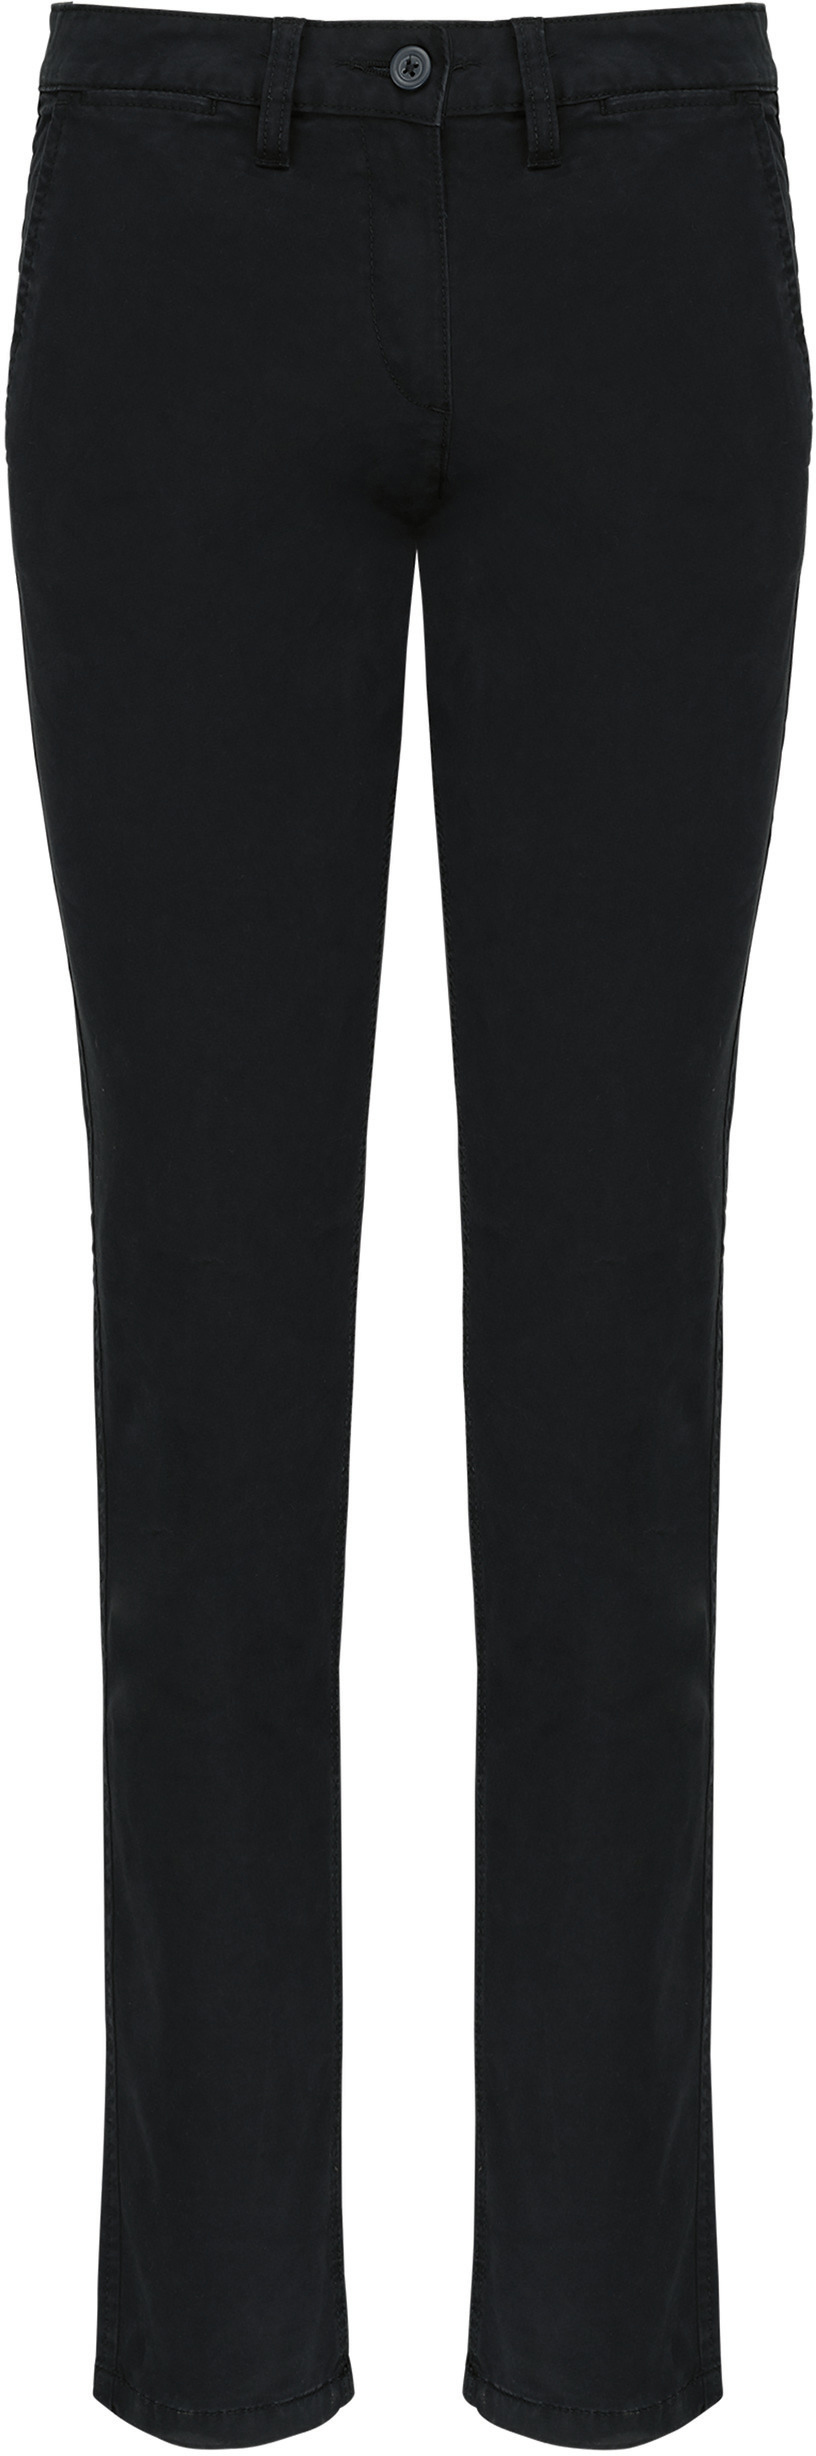 Dámské kalhoty CHINO K741 Barva: černá, Velikost: 40